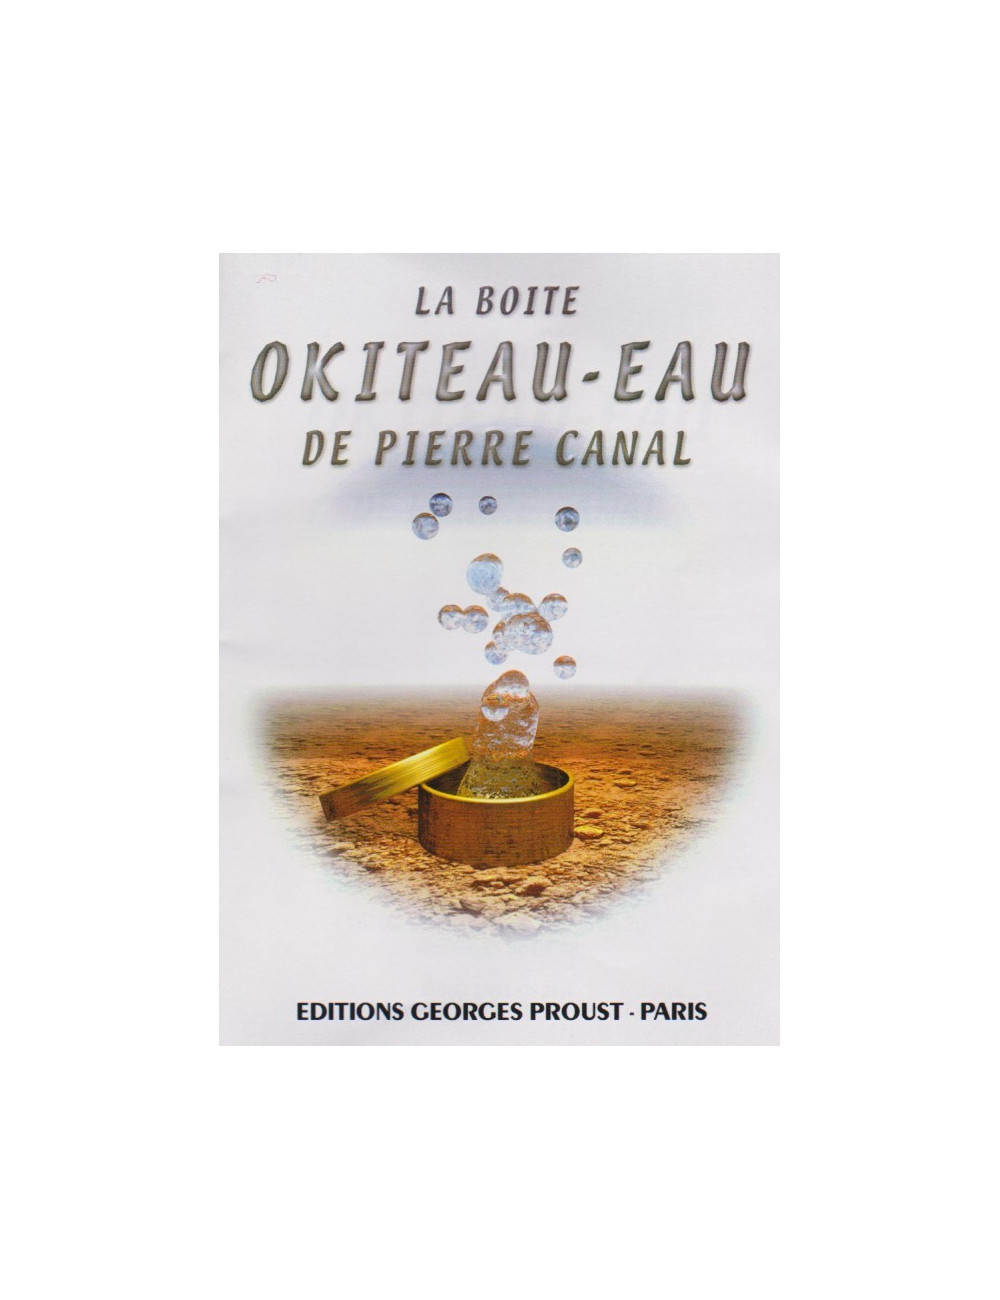 LA BOITE OKITEAU-EAU DE PIERRE CANAL